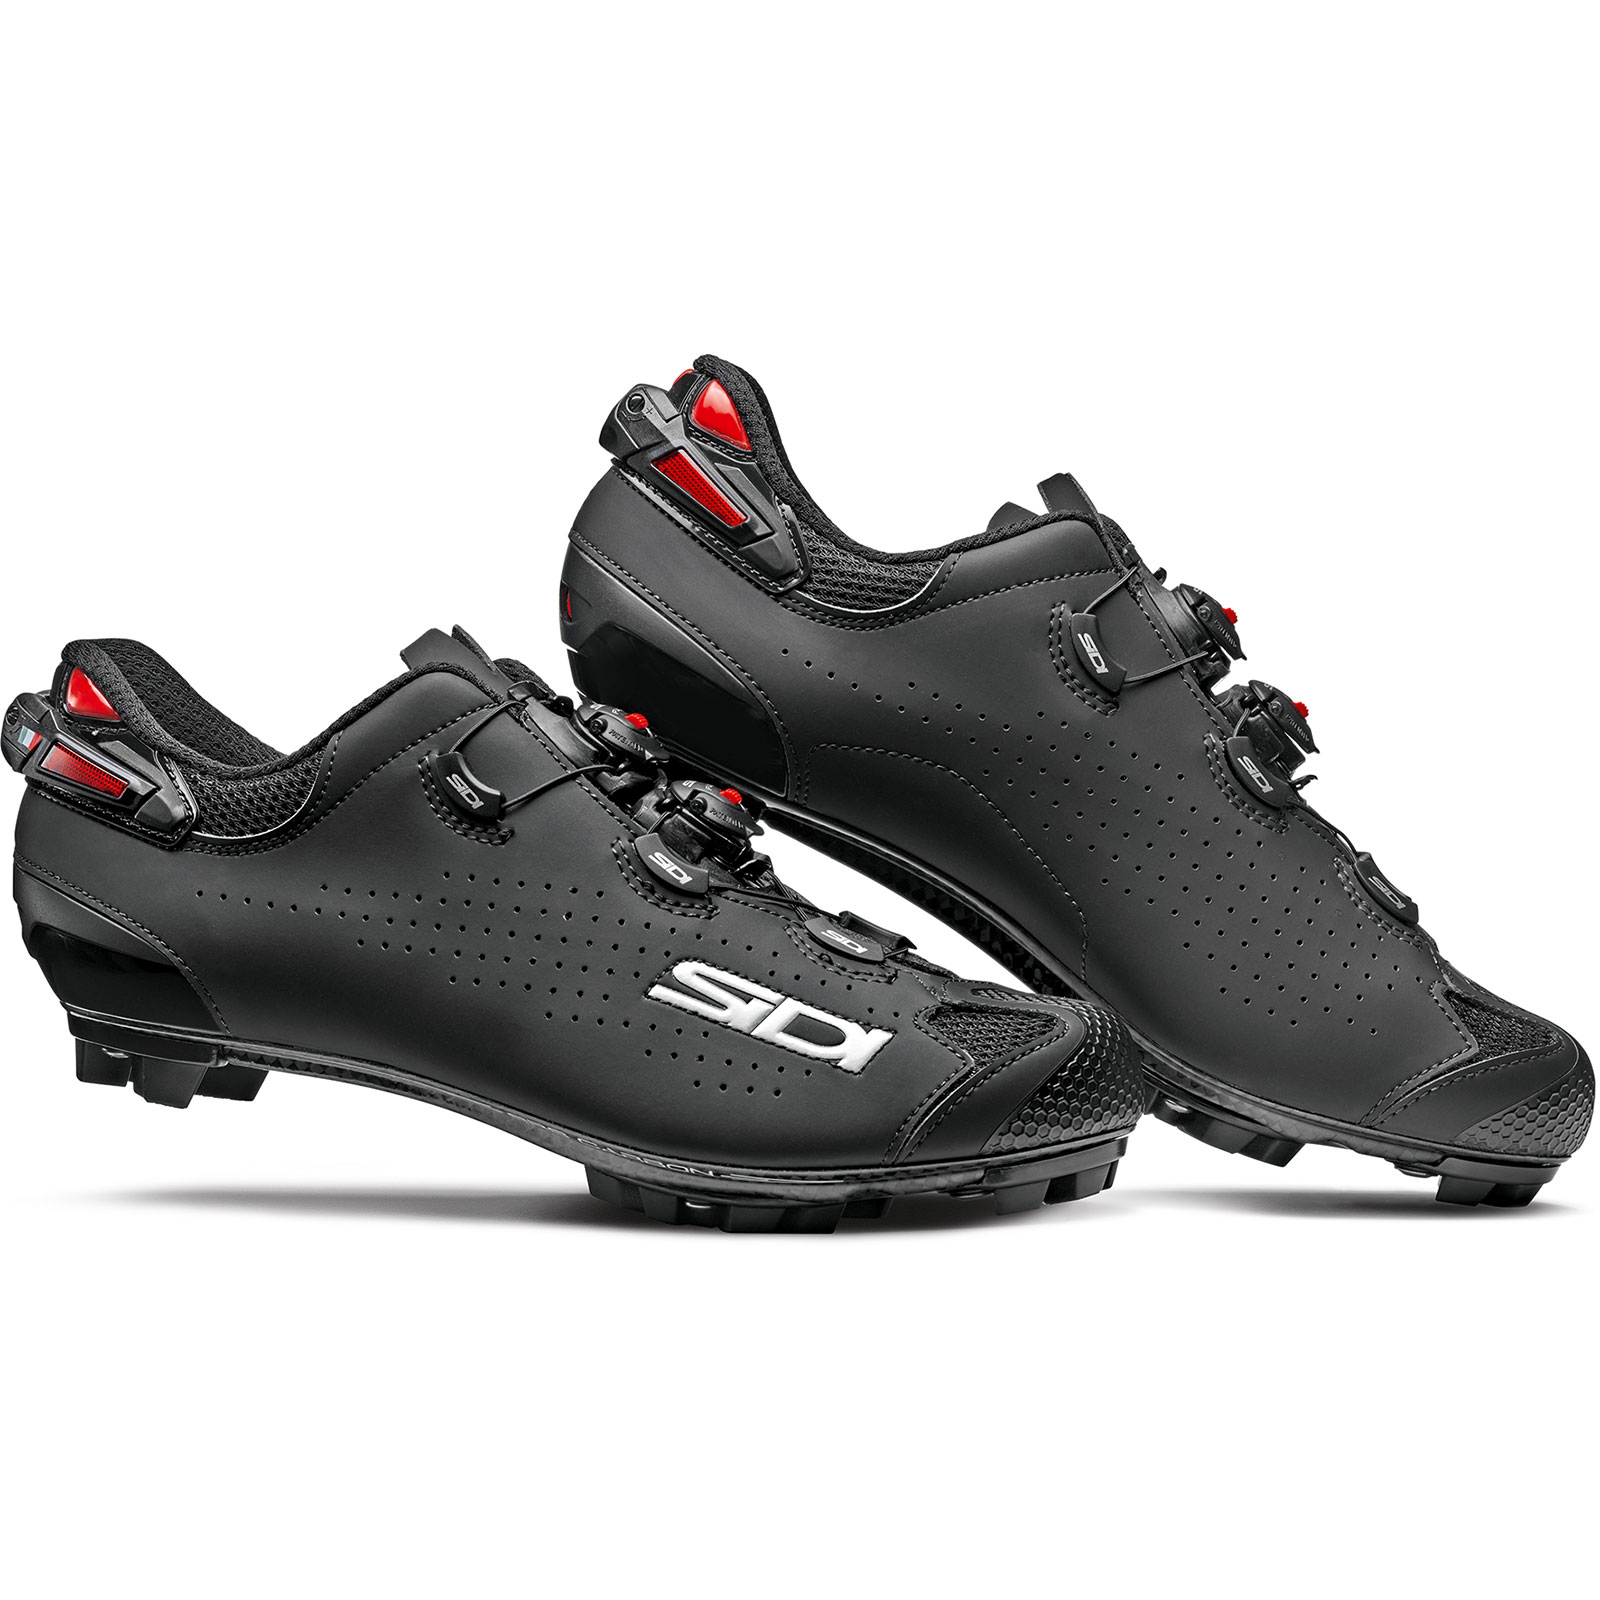 Produktbild von Sidi Tiger 2 MTB Schuhe - schwarz/schwarz